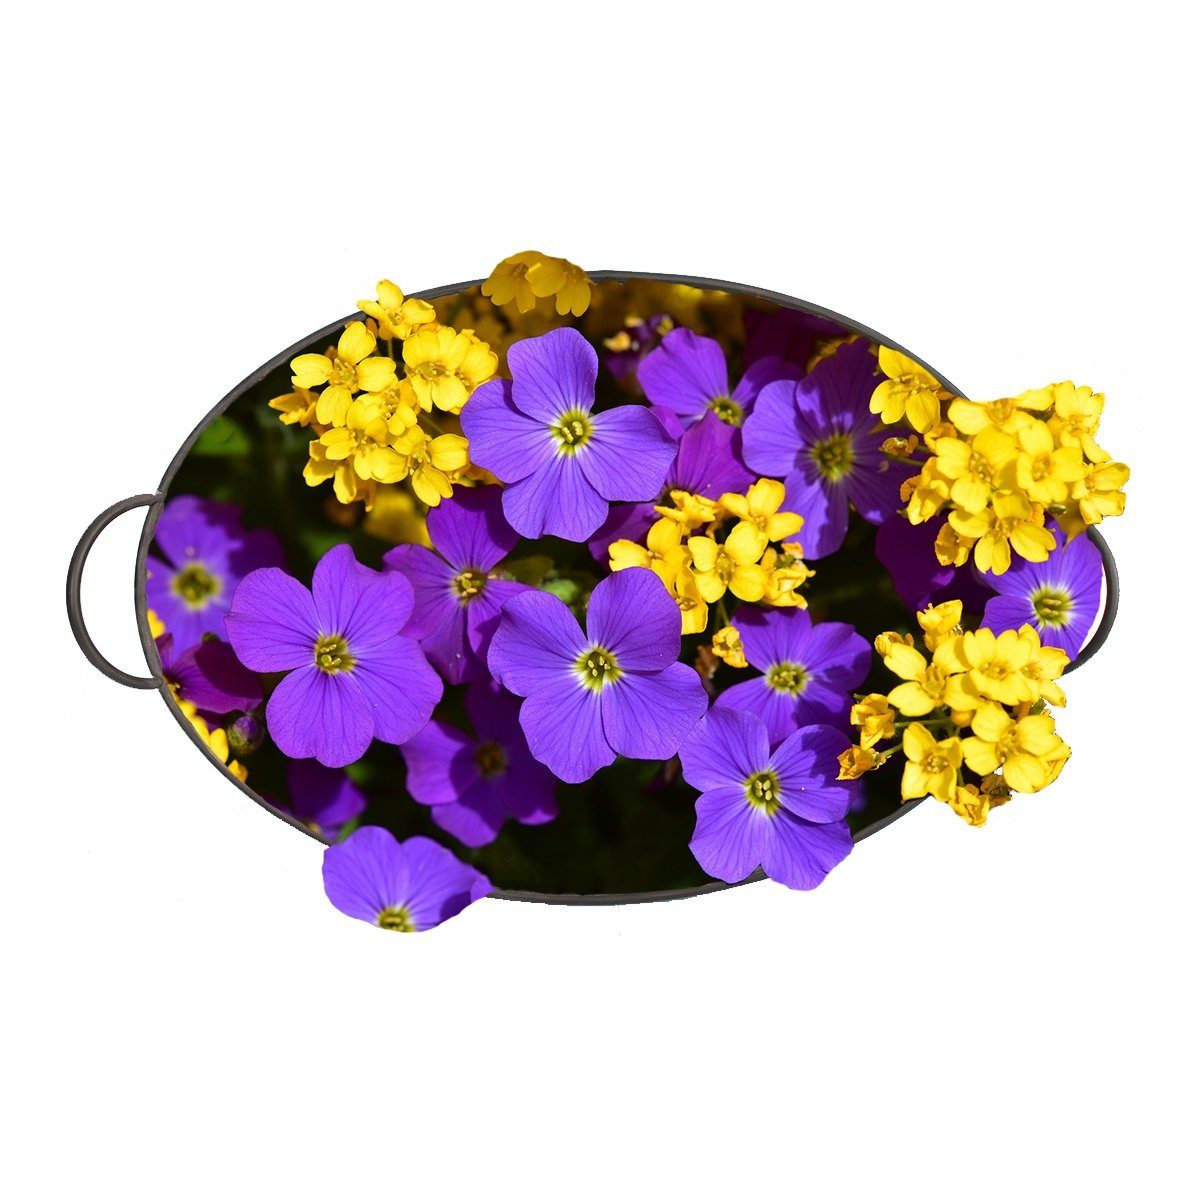 Pflanztopf 3er tragbar, St), vielseitig verwendbar Zinkwannen ineinander verstaubar, Blumentopf (3 colourliving dekorativ, ovale Griffe Blumentopf Blumenmuster Set